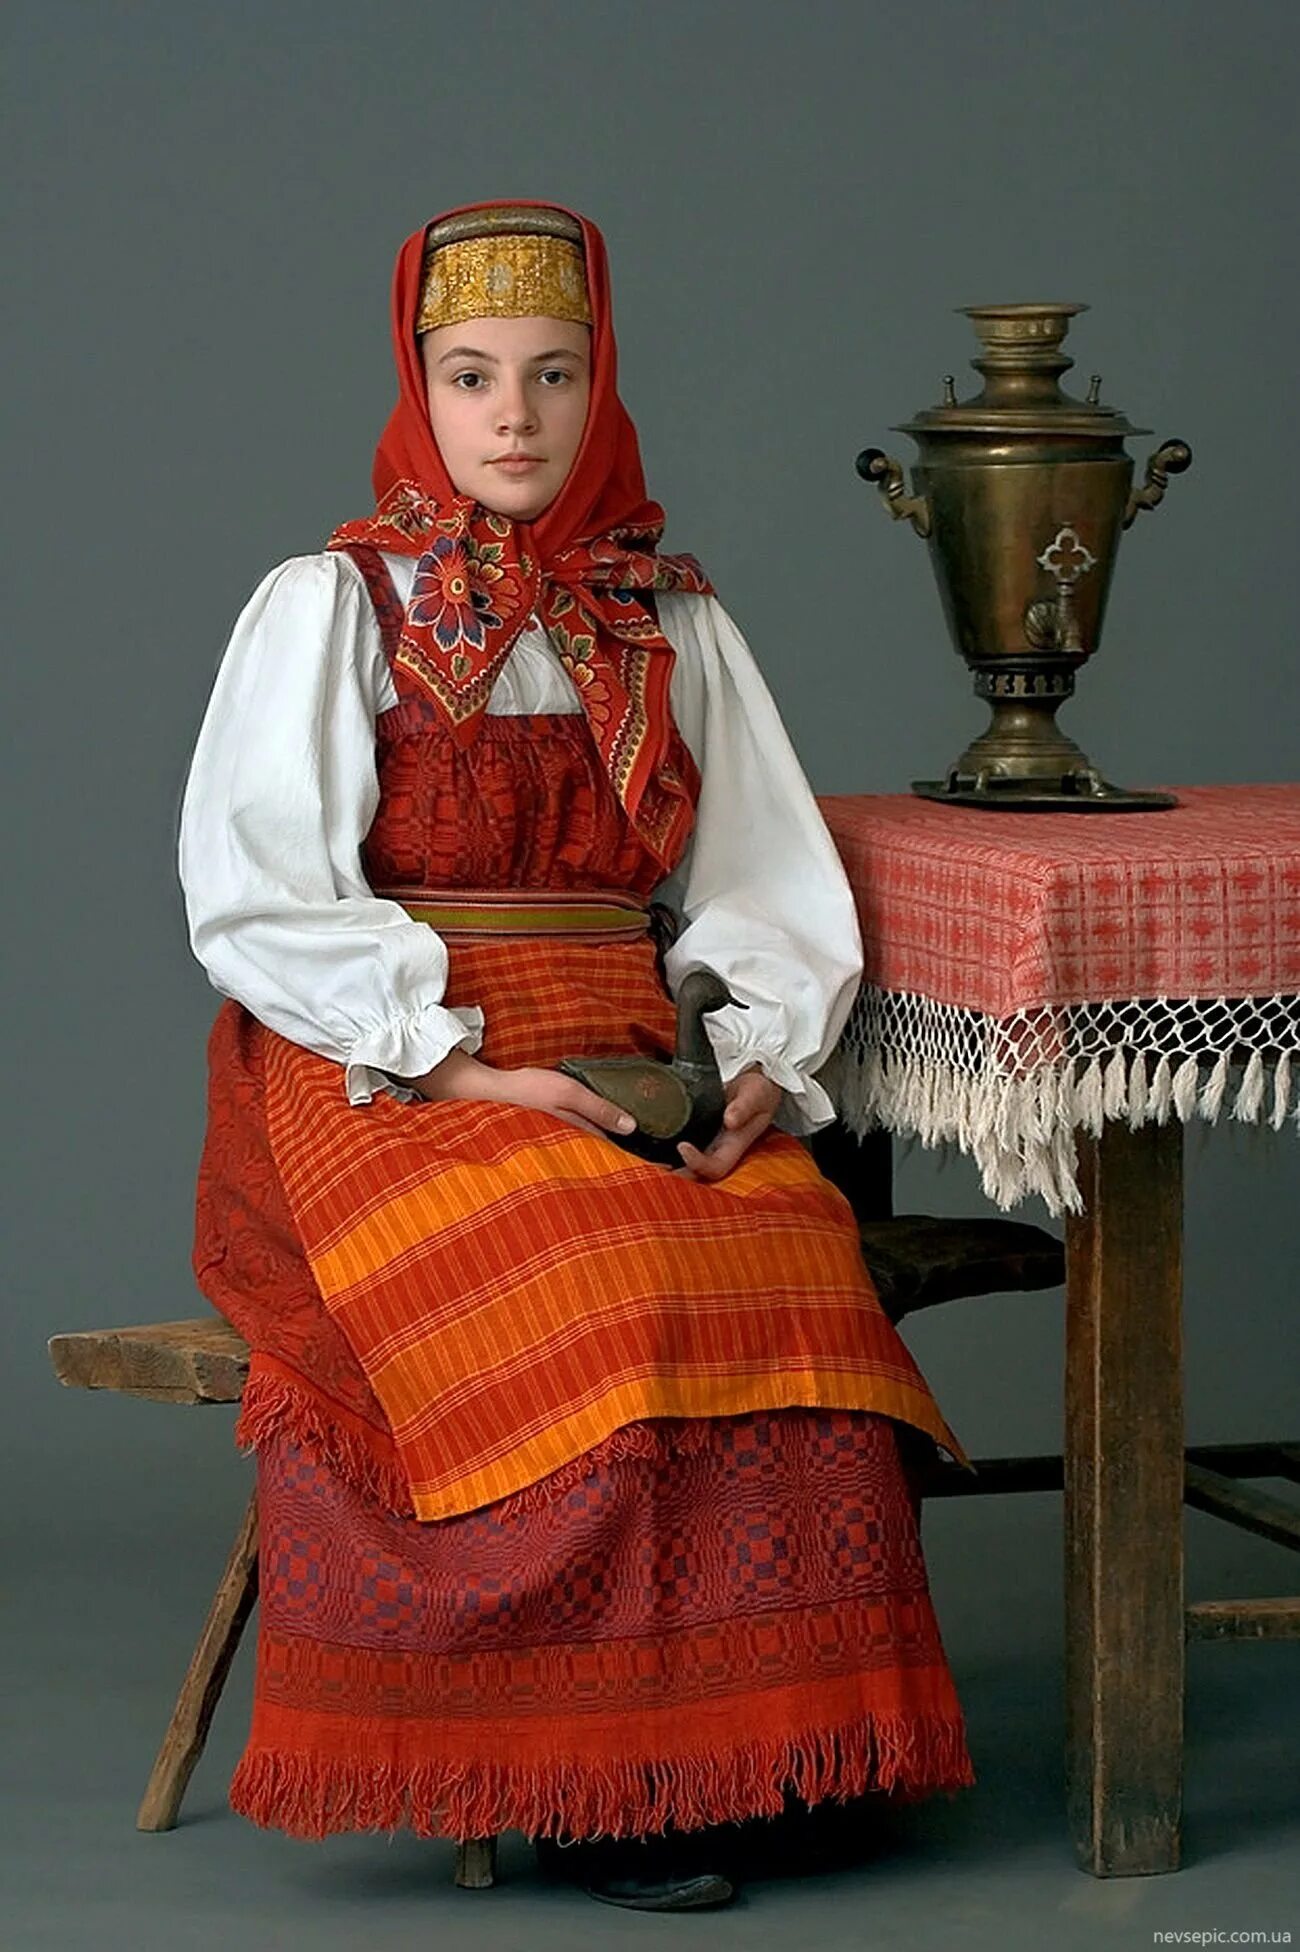 Russkiy. Русский наряд женщины. Национальный костюм России. Русский народный наряд женщины. Русский народный костюм фотографии.